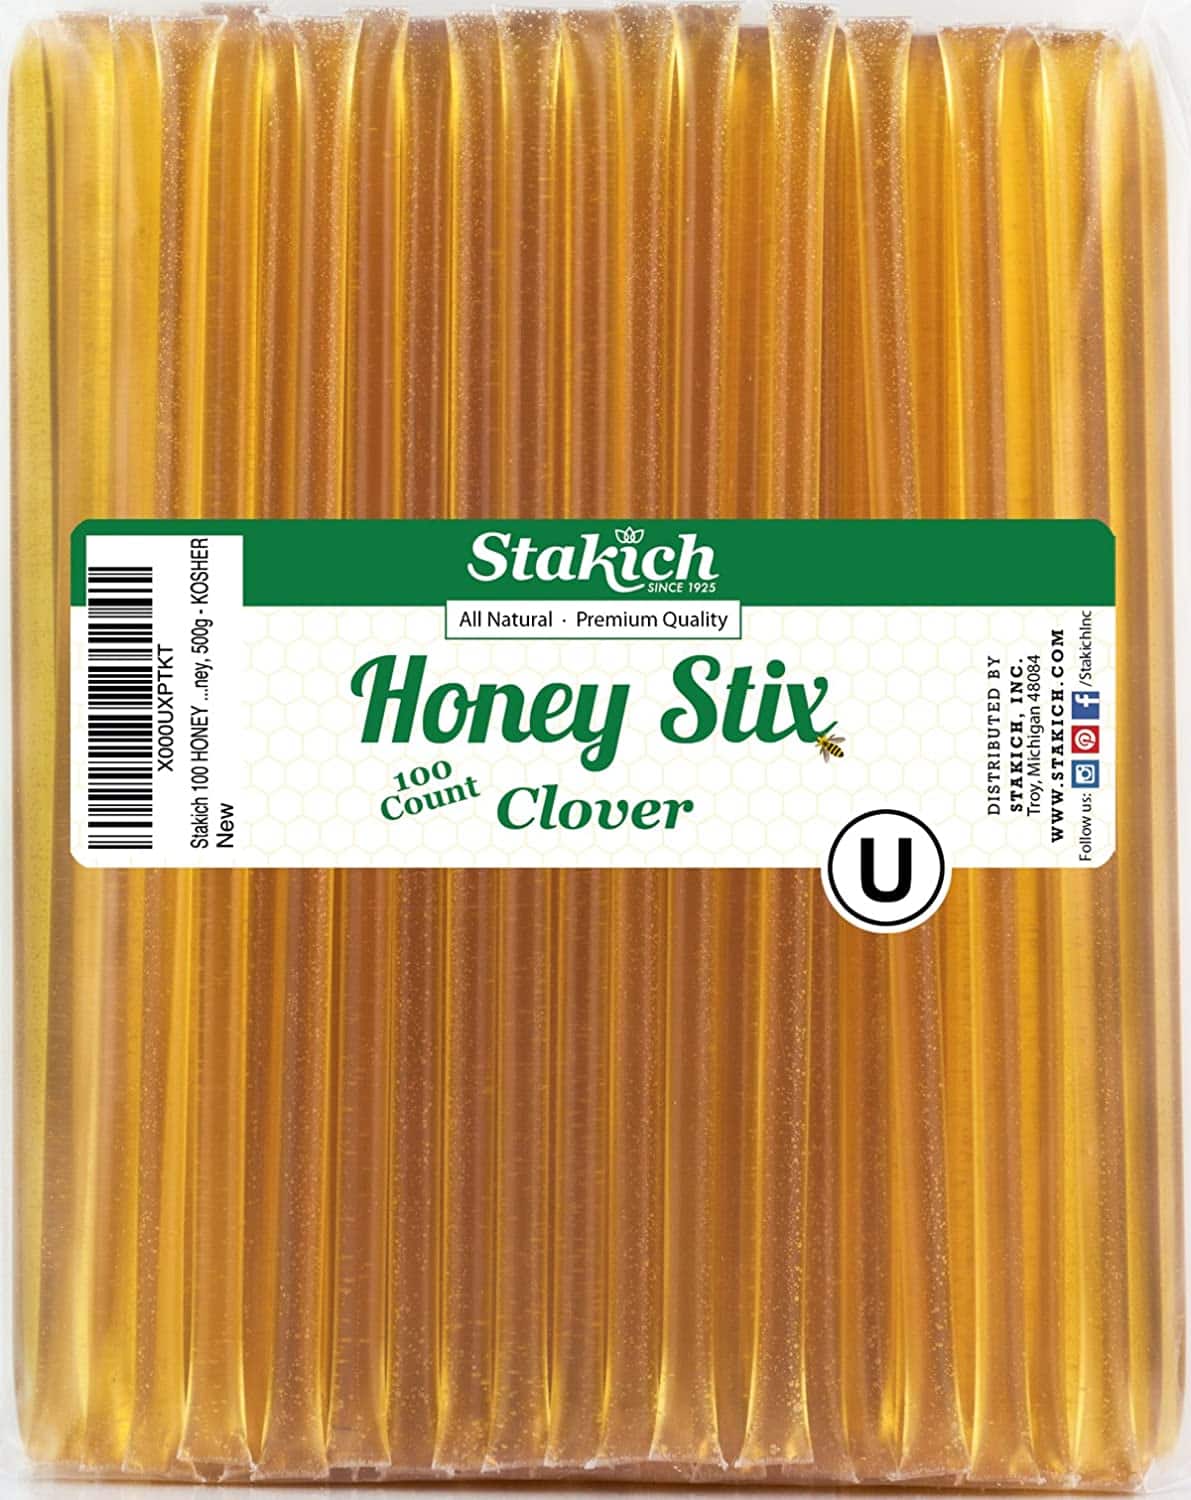 Stakich Clover Honey Stix